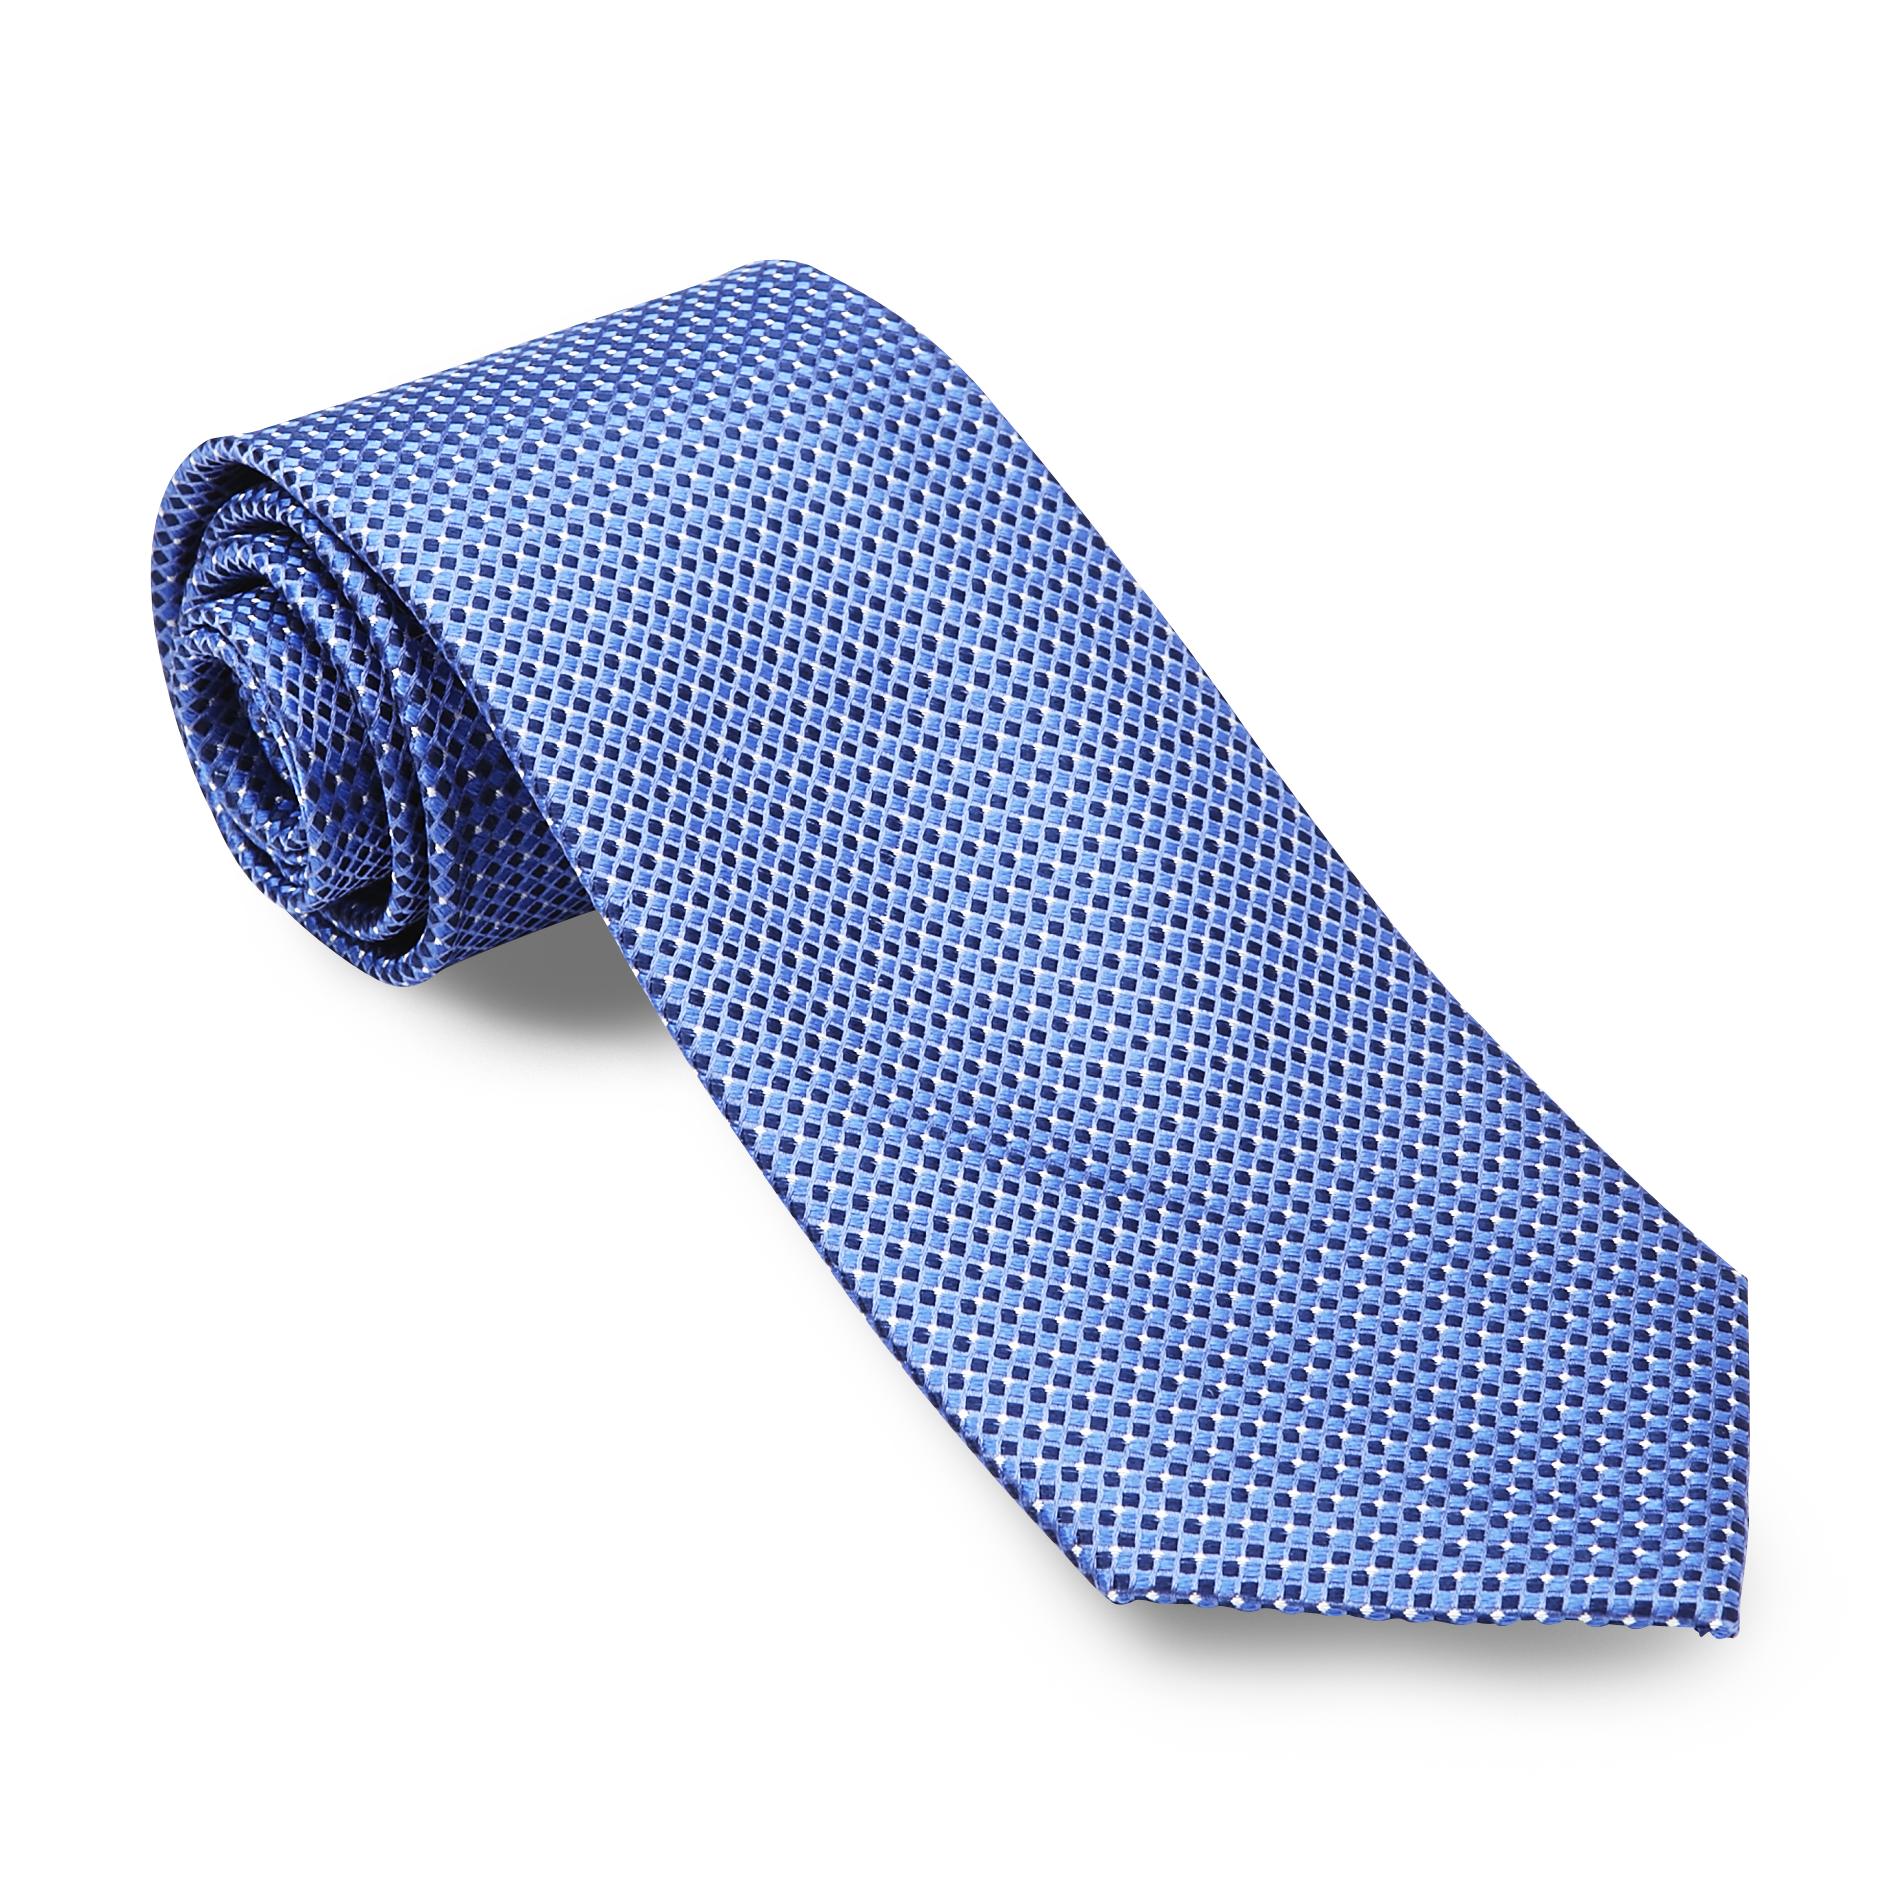 U.S. Polo Assn. Men's Silk Necktie - Checkered